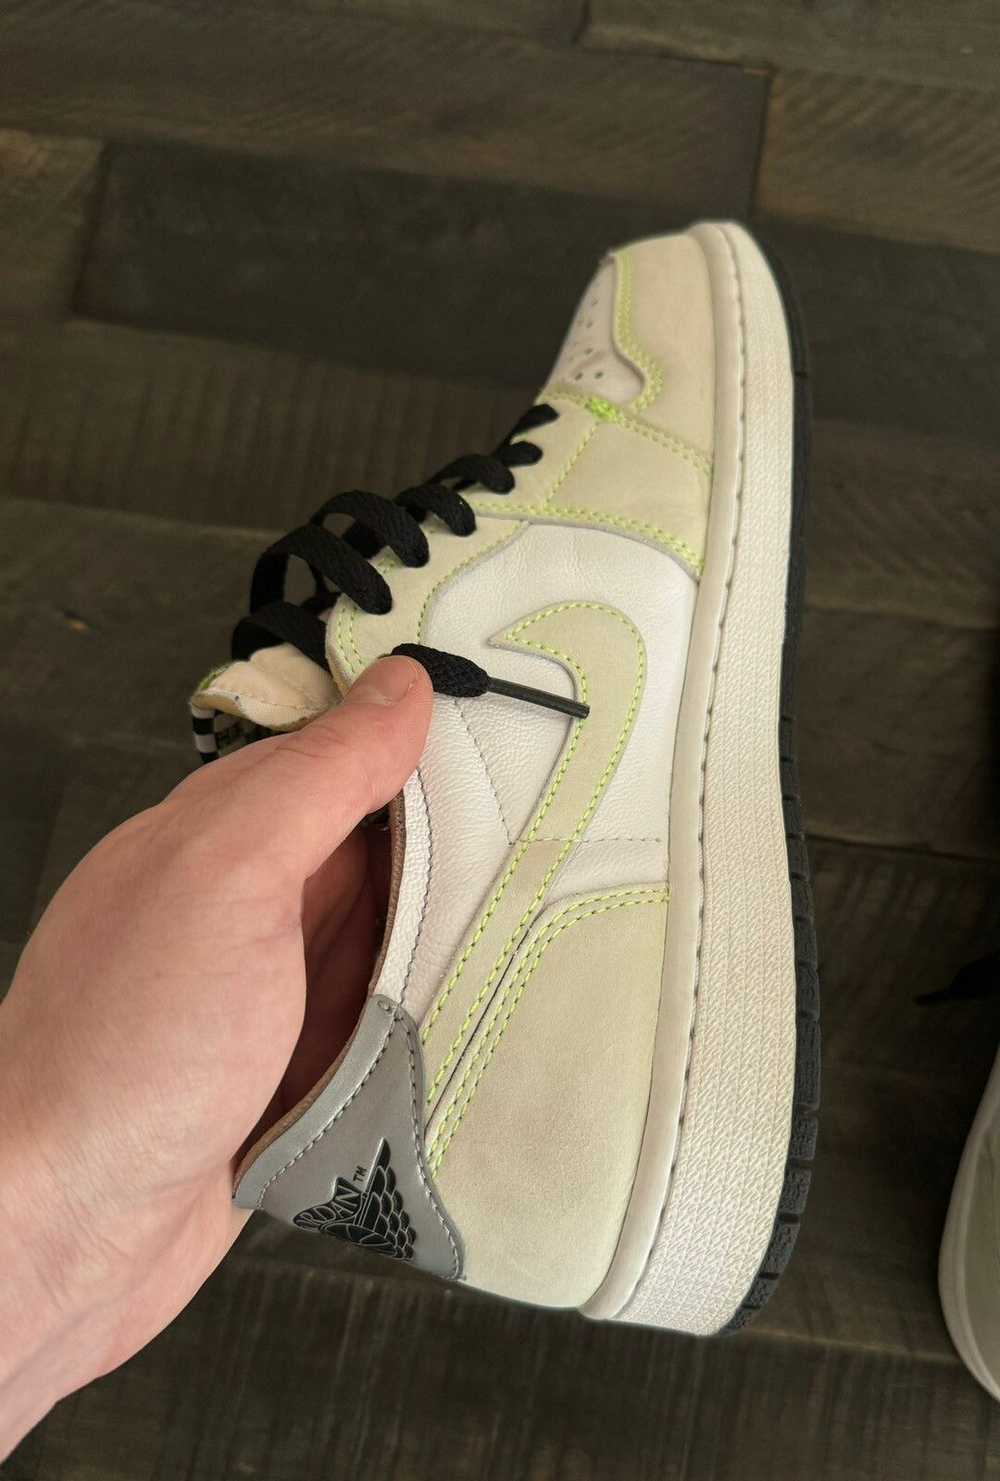 Jordan Brand × Nike Jordan 1 Low OG “Ghost Green” - image 5